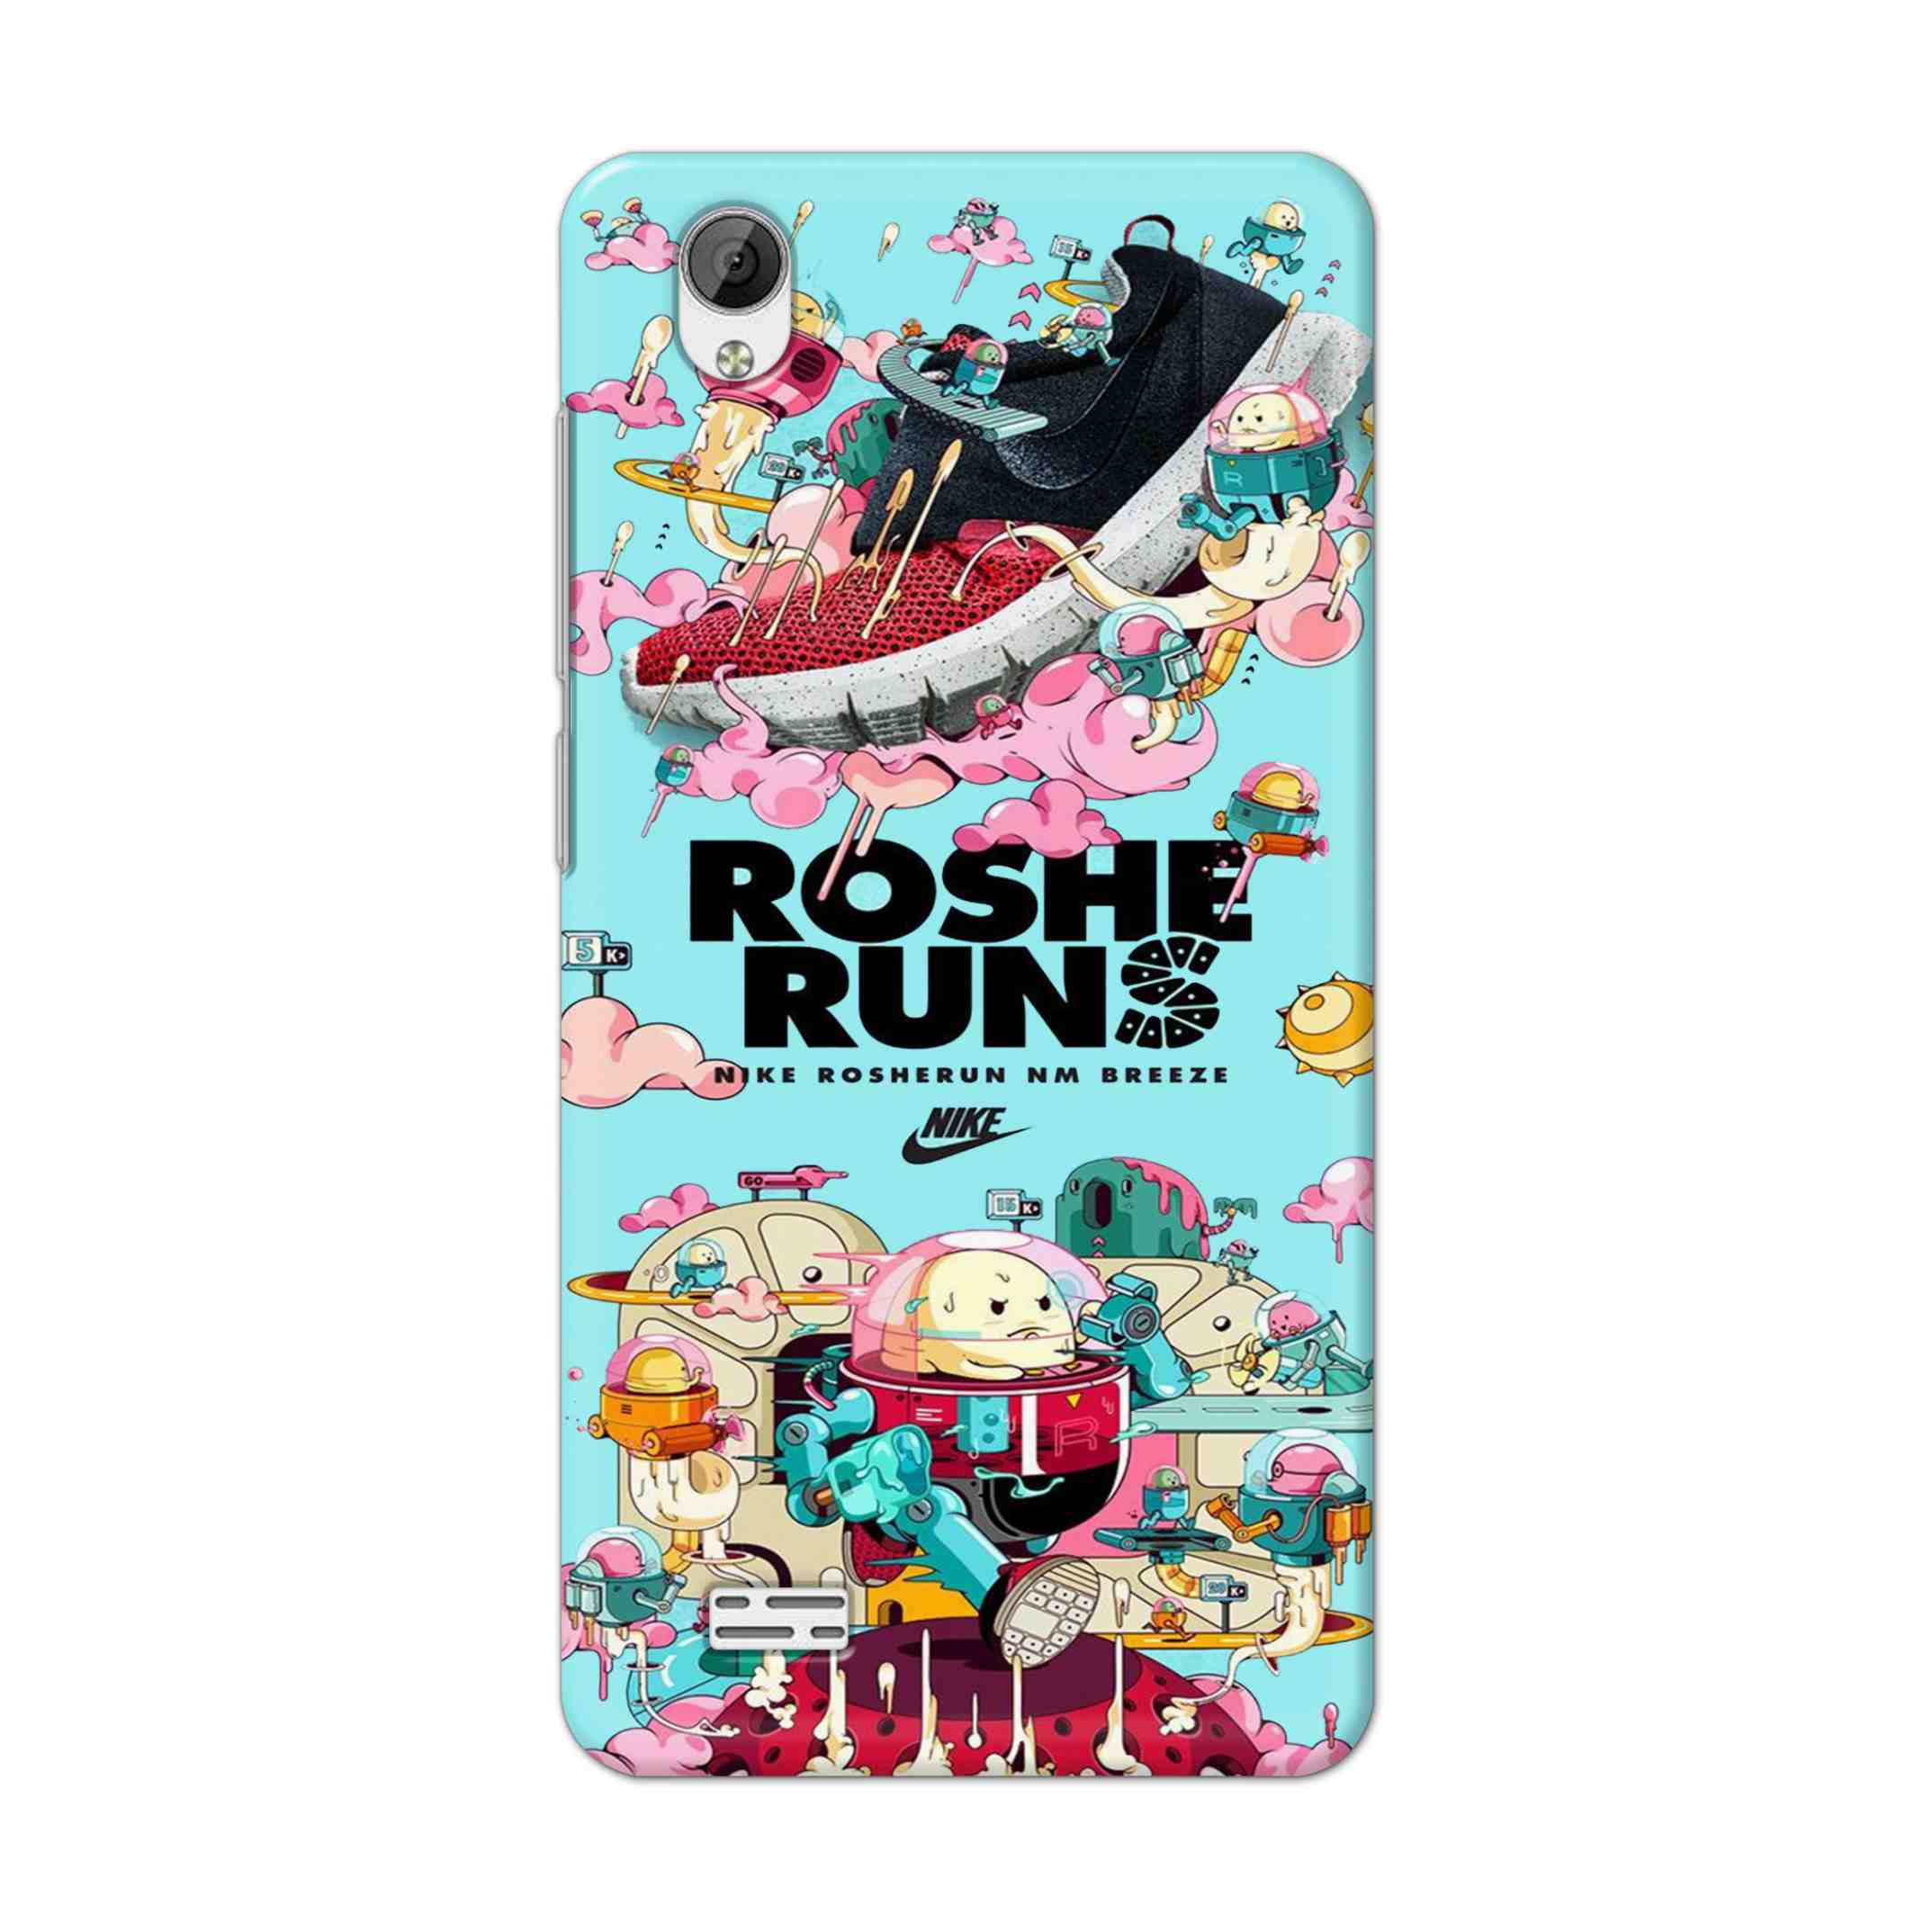 Buy Roshe Runs Hard Back Mobile Phone Case Cover For Vivo Y31 Online